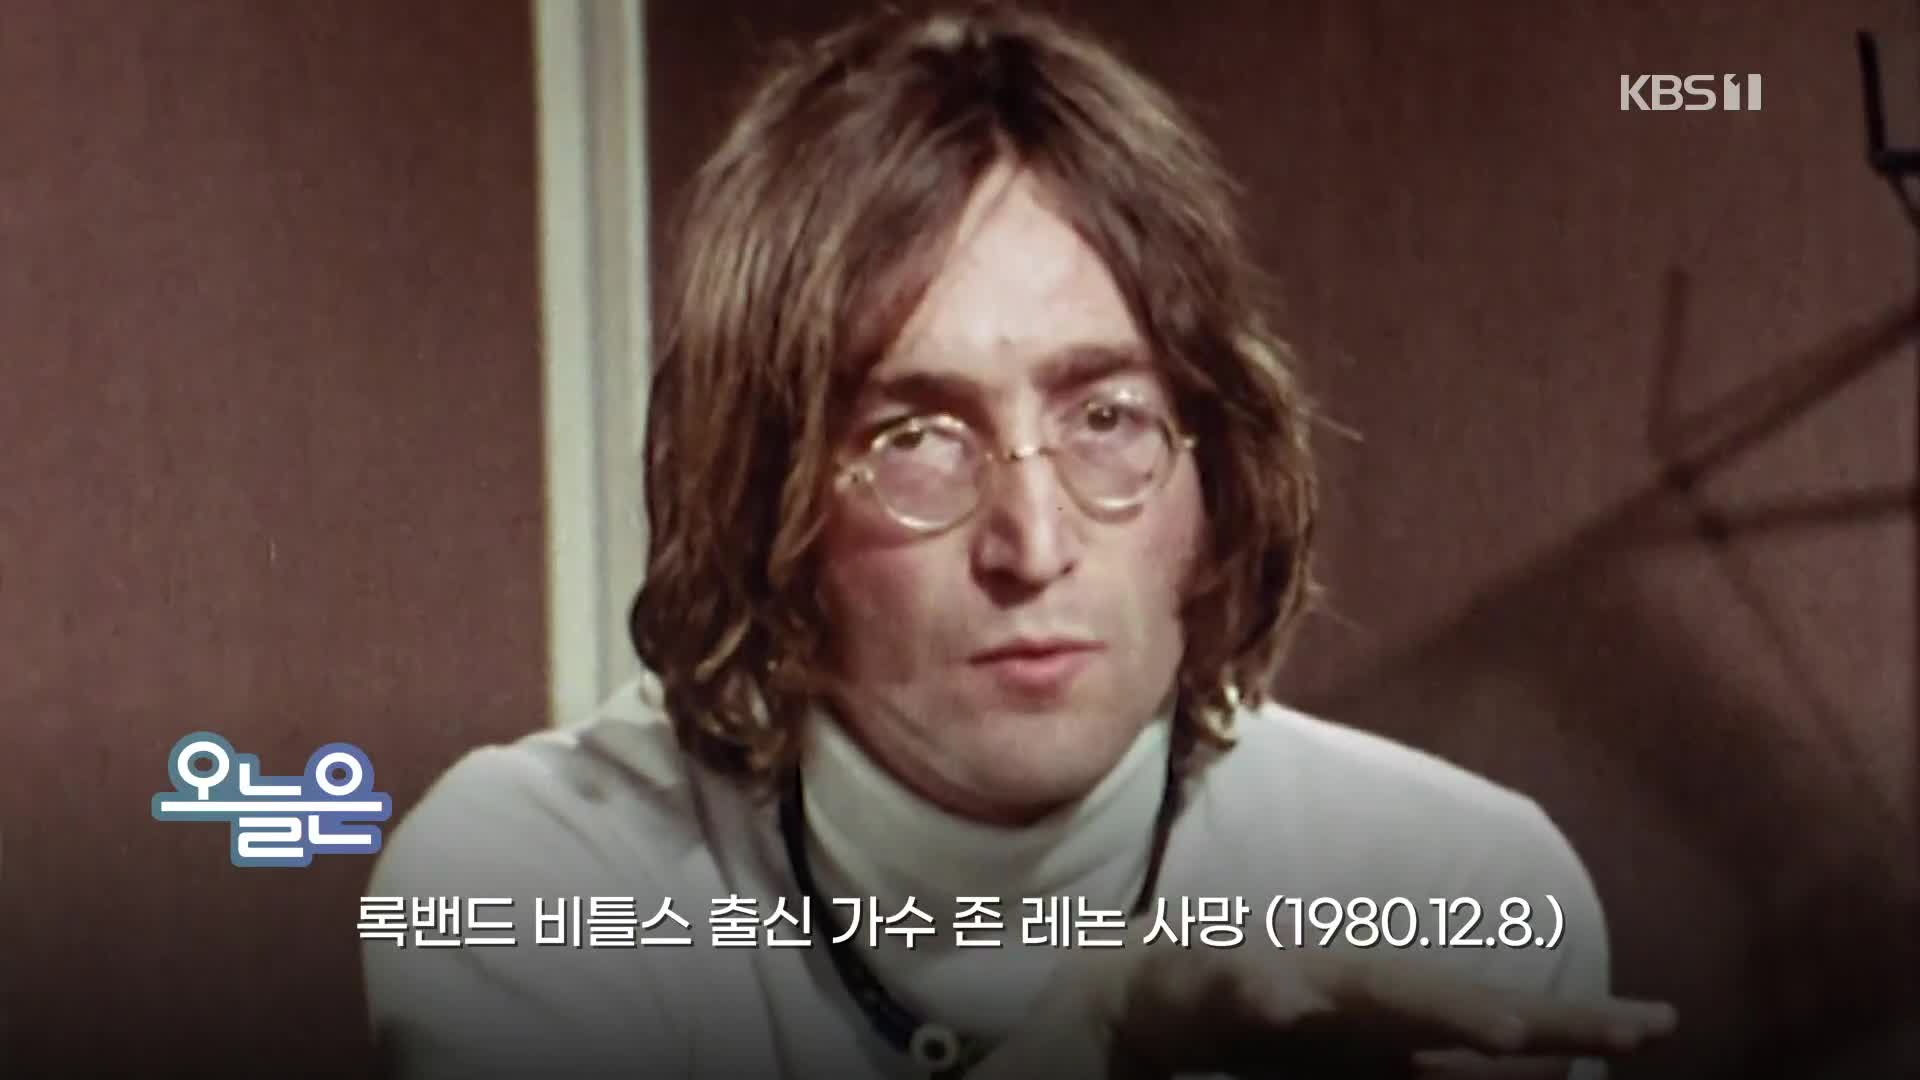 [오늘은] 록밴드 비틀스 출신 가수 존 레논 사망 (1980.12.8.)